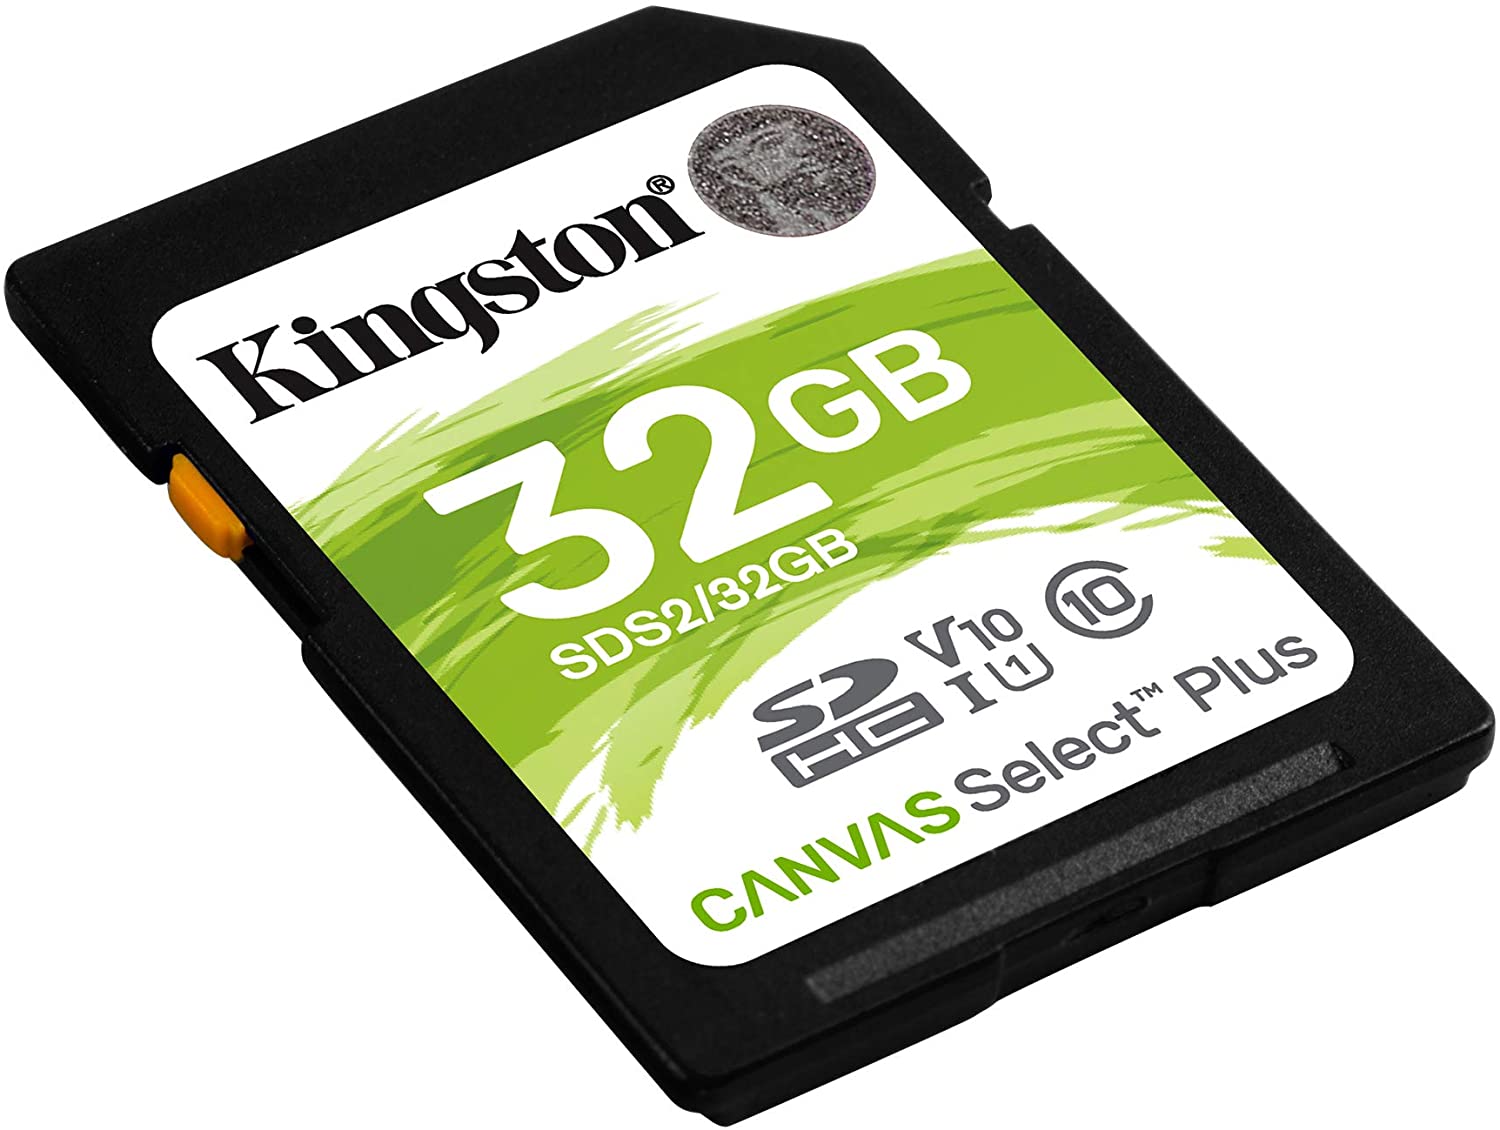 Kingston Tarjeta SDHC 32GB UHS-I Clase 10 100MB/s Canvas Select Plus